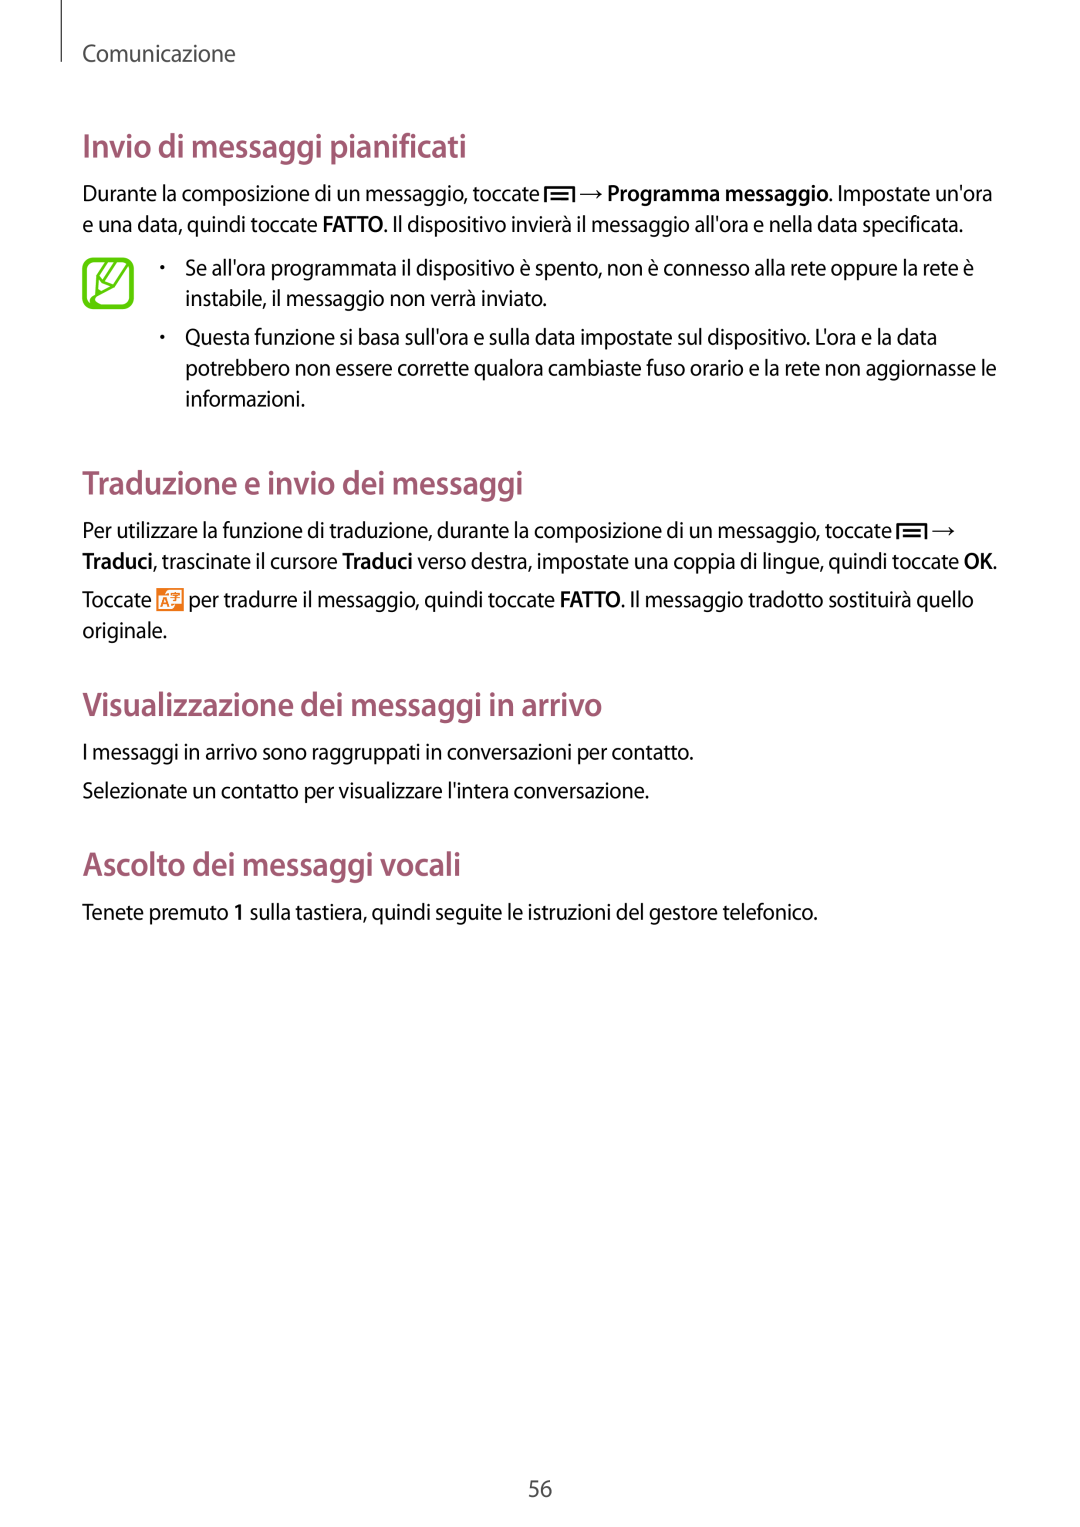 Samsung GT-I9515ZWAXEH manual Invio di messaggi pianificati, Traduzione e invio dei messaggi, Ascolto dei messaggi vocali 